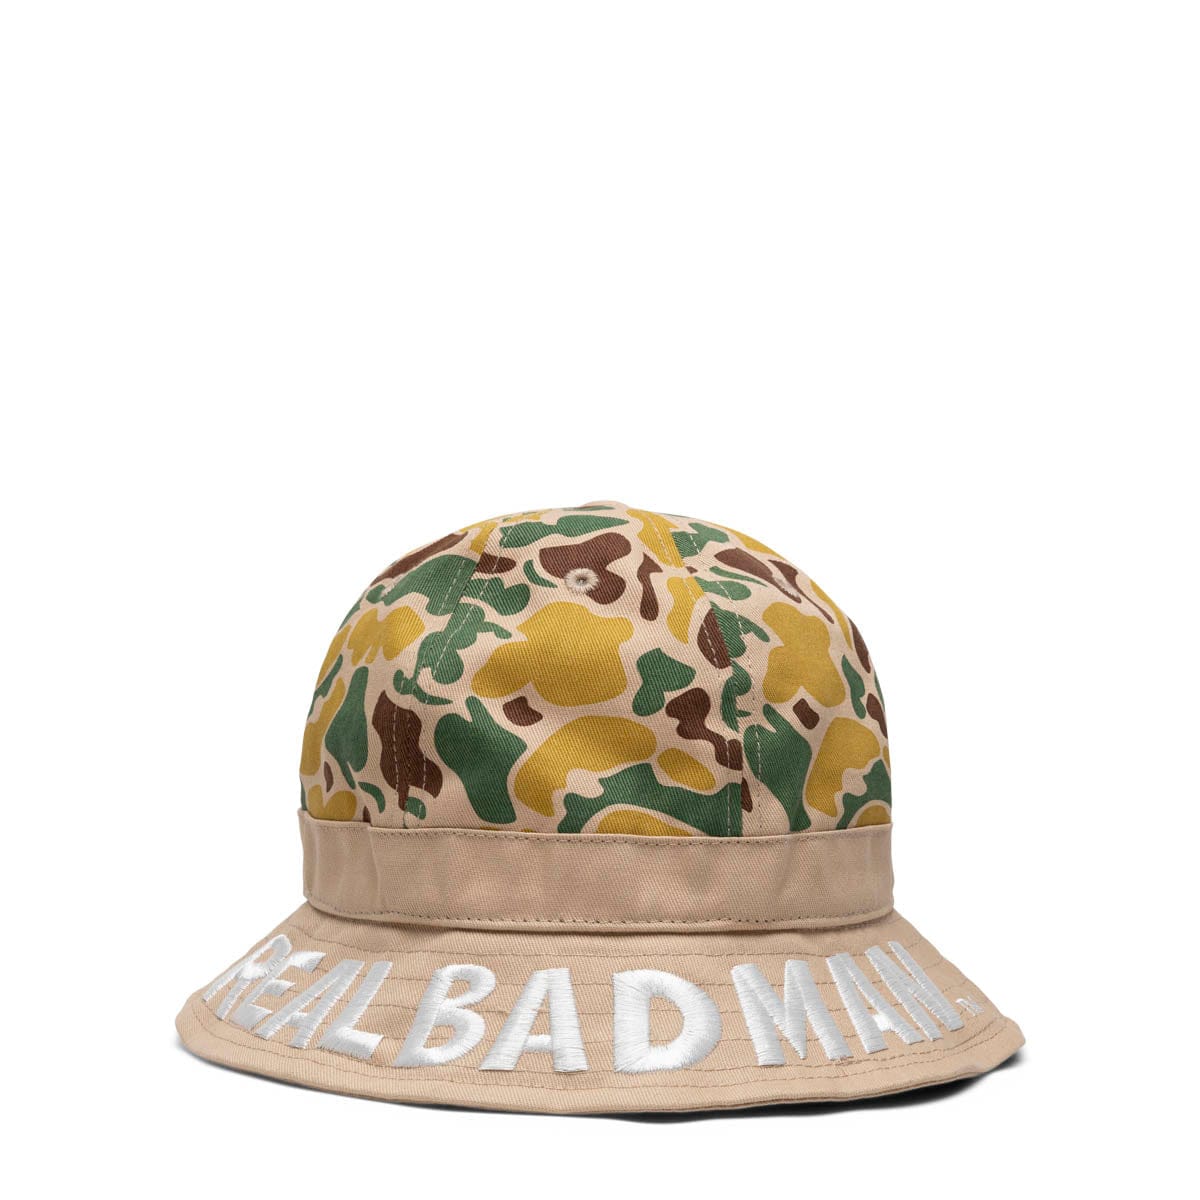 Real Bad Man Headwear LOST HIKER BUCKET HAT